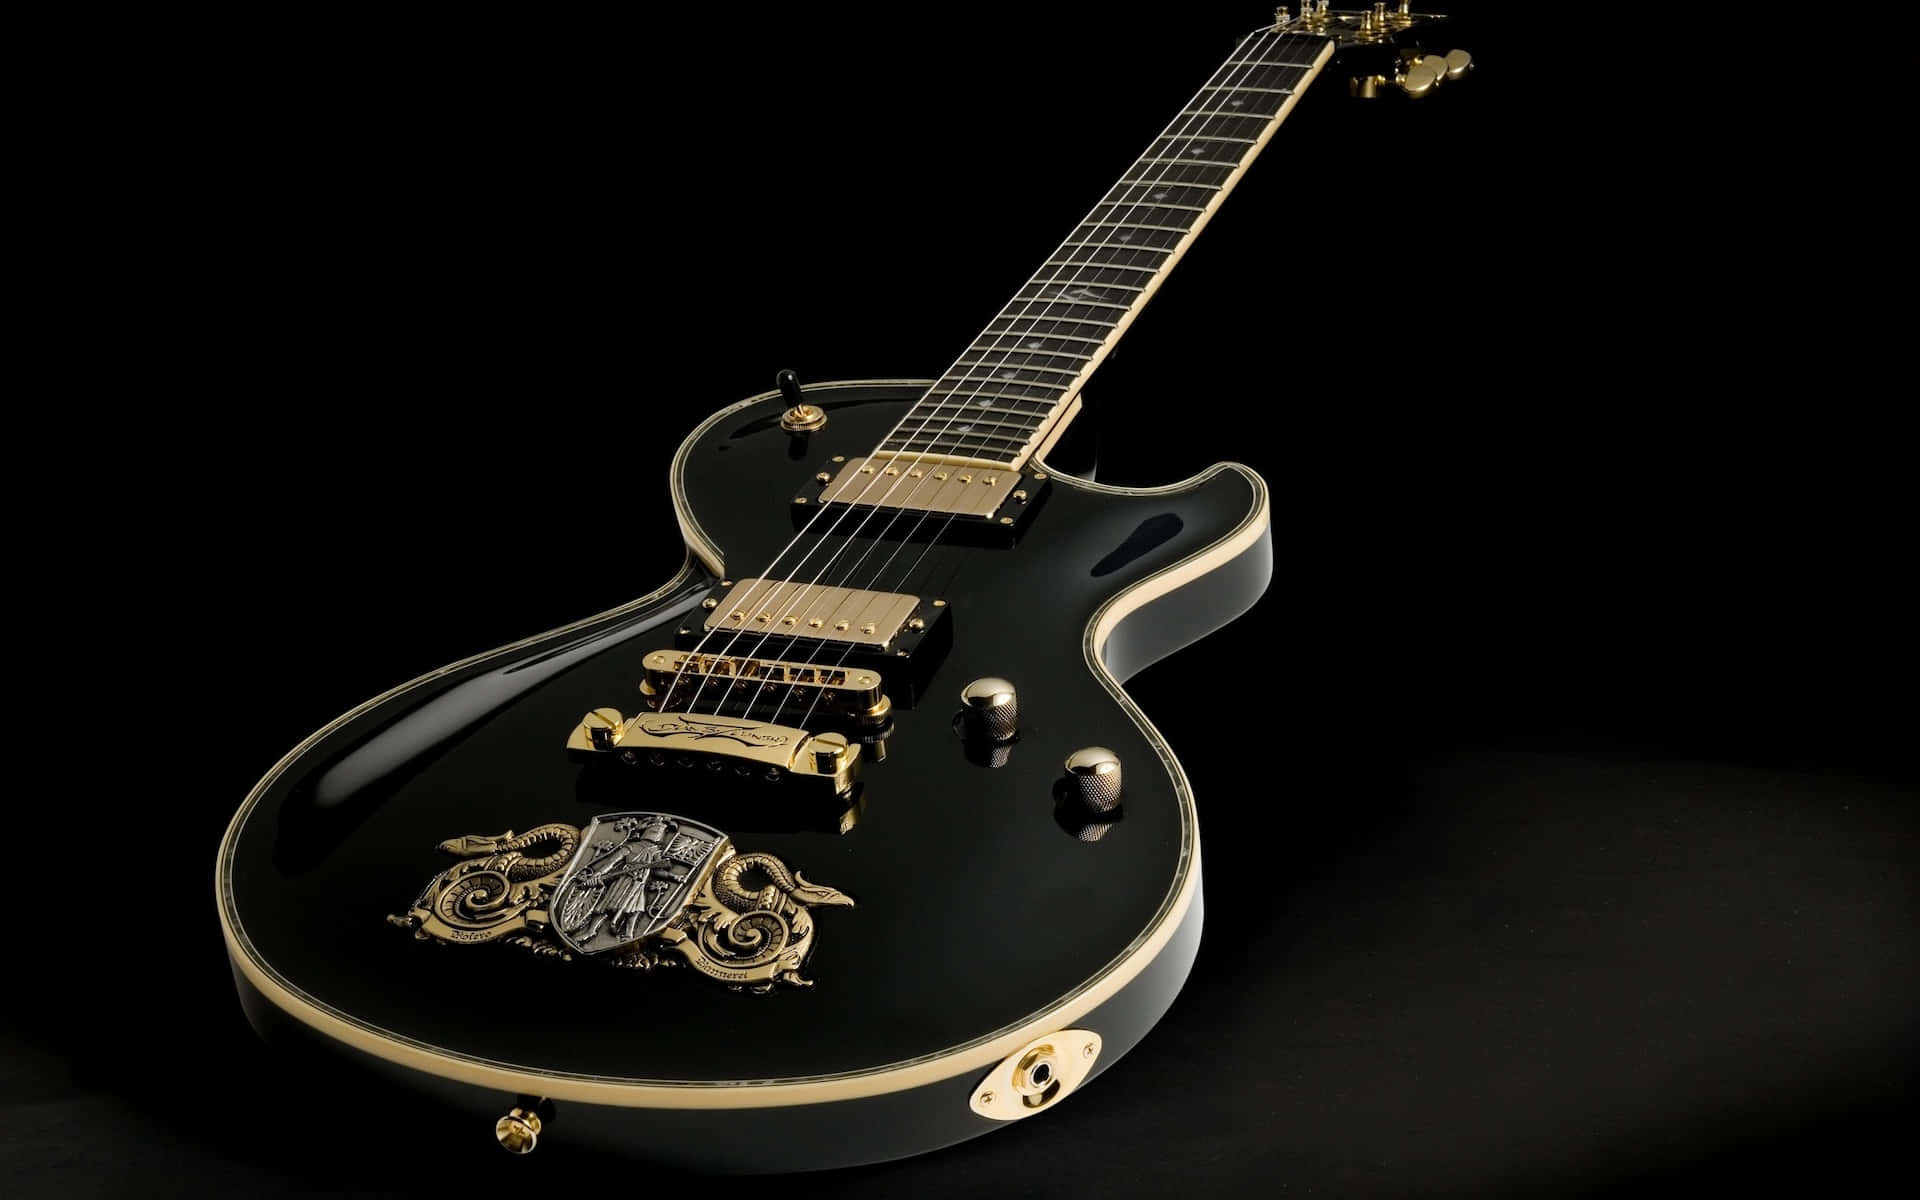 Black Electric Guitar Gold Details Background